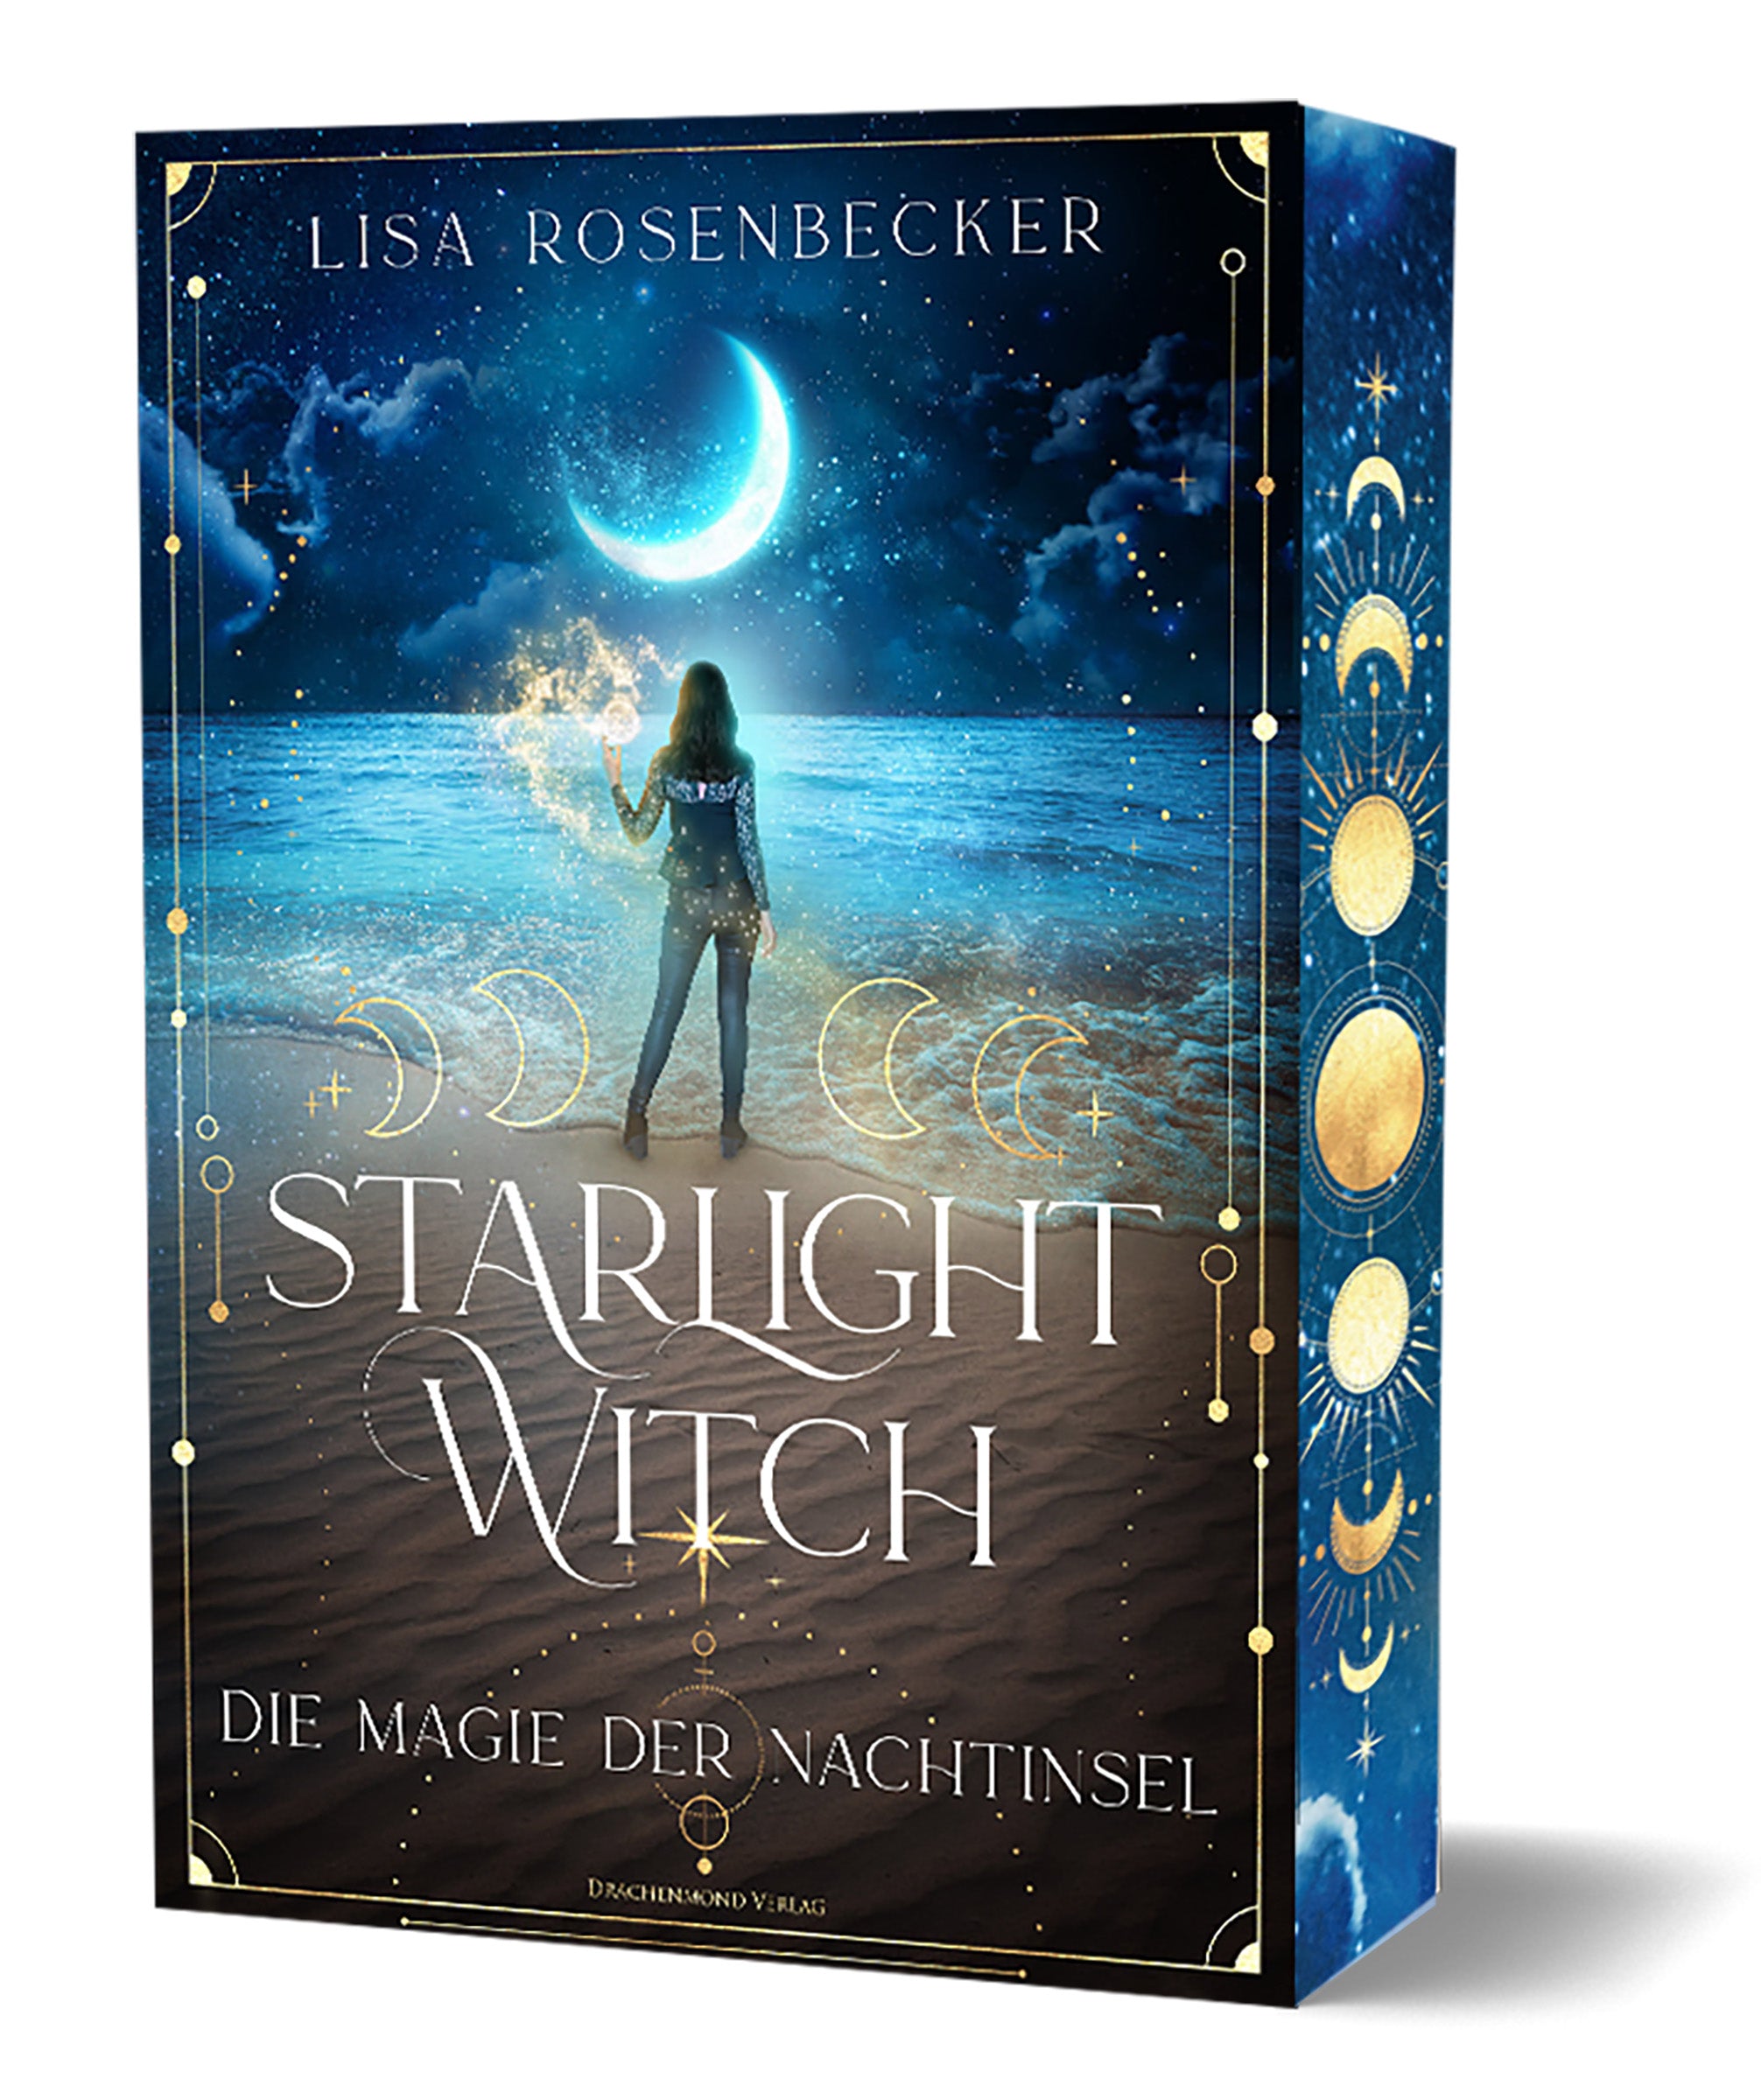 Starlight Witch – Die Magie der Nachtinsel